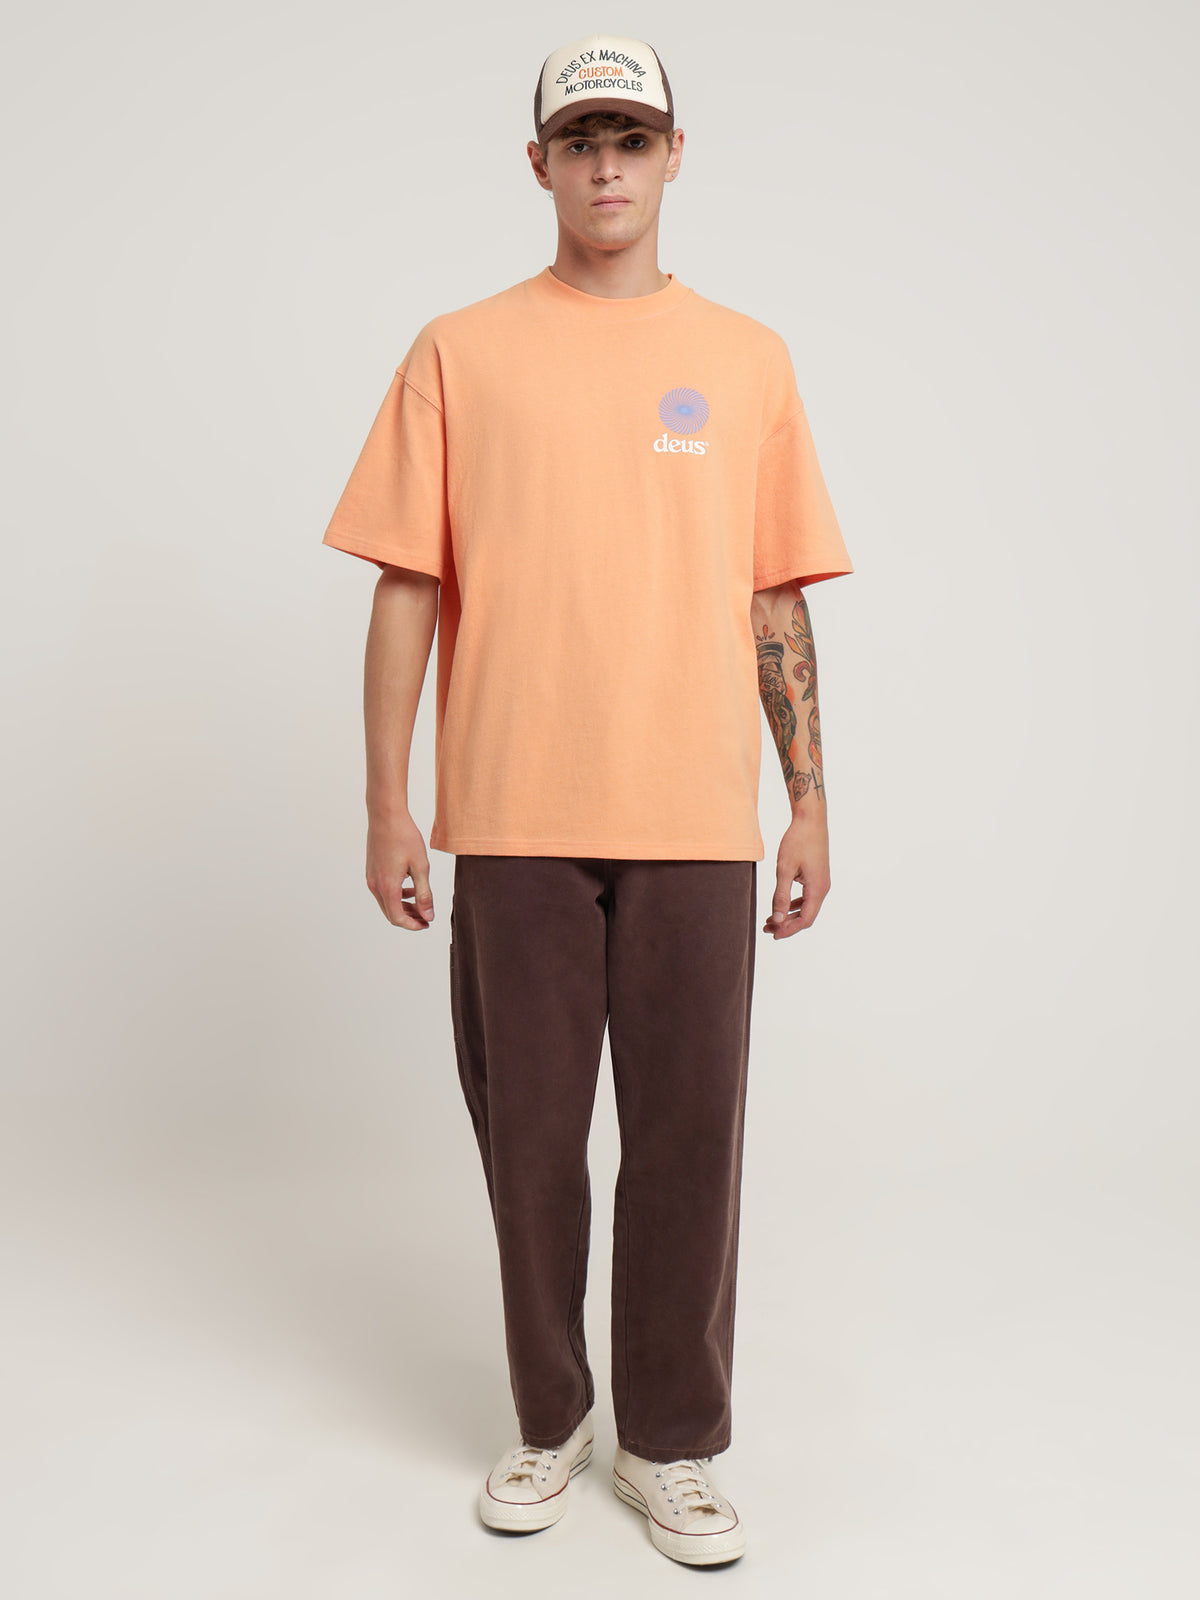 Strata T-Shirt in Sunkist Orange